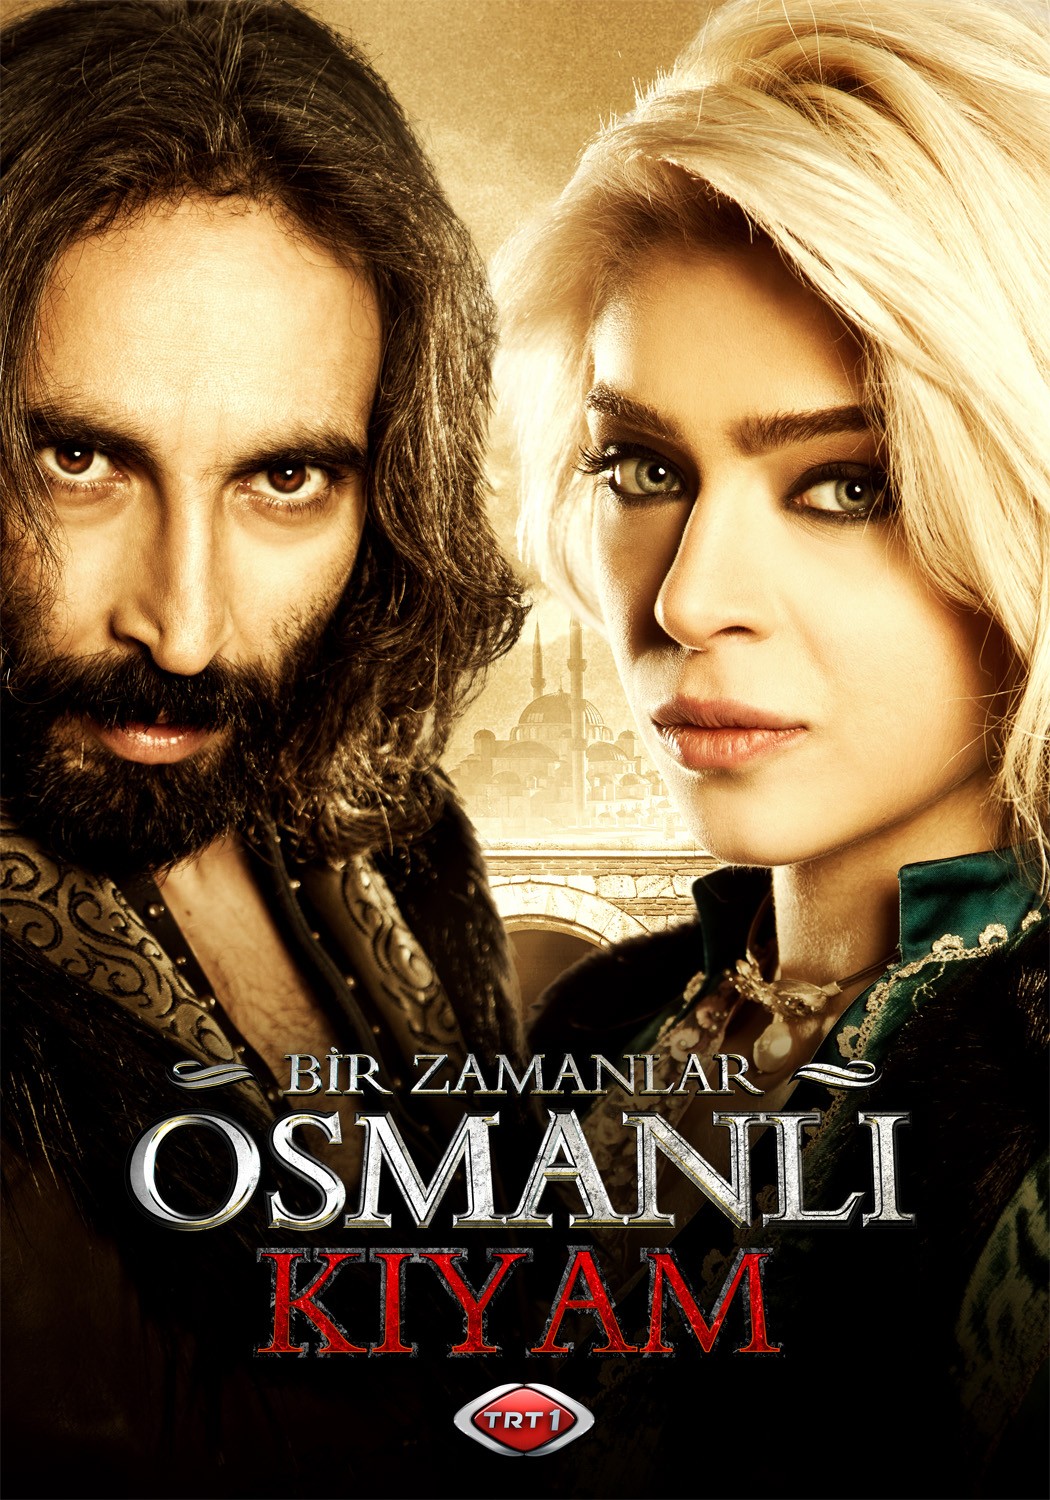 Extra Large TV Poster Image for Bir Zamanlar Osmanli Kiyam (#9 of 26)